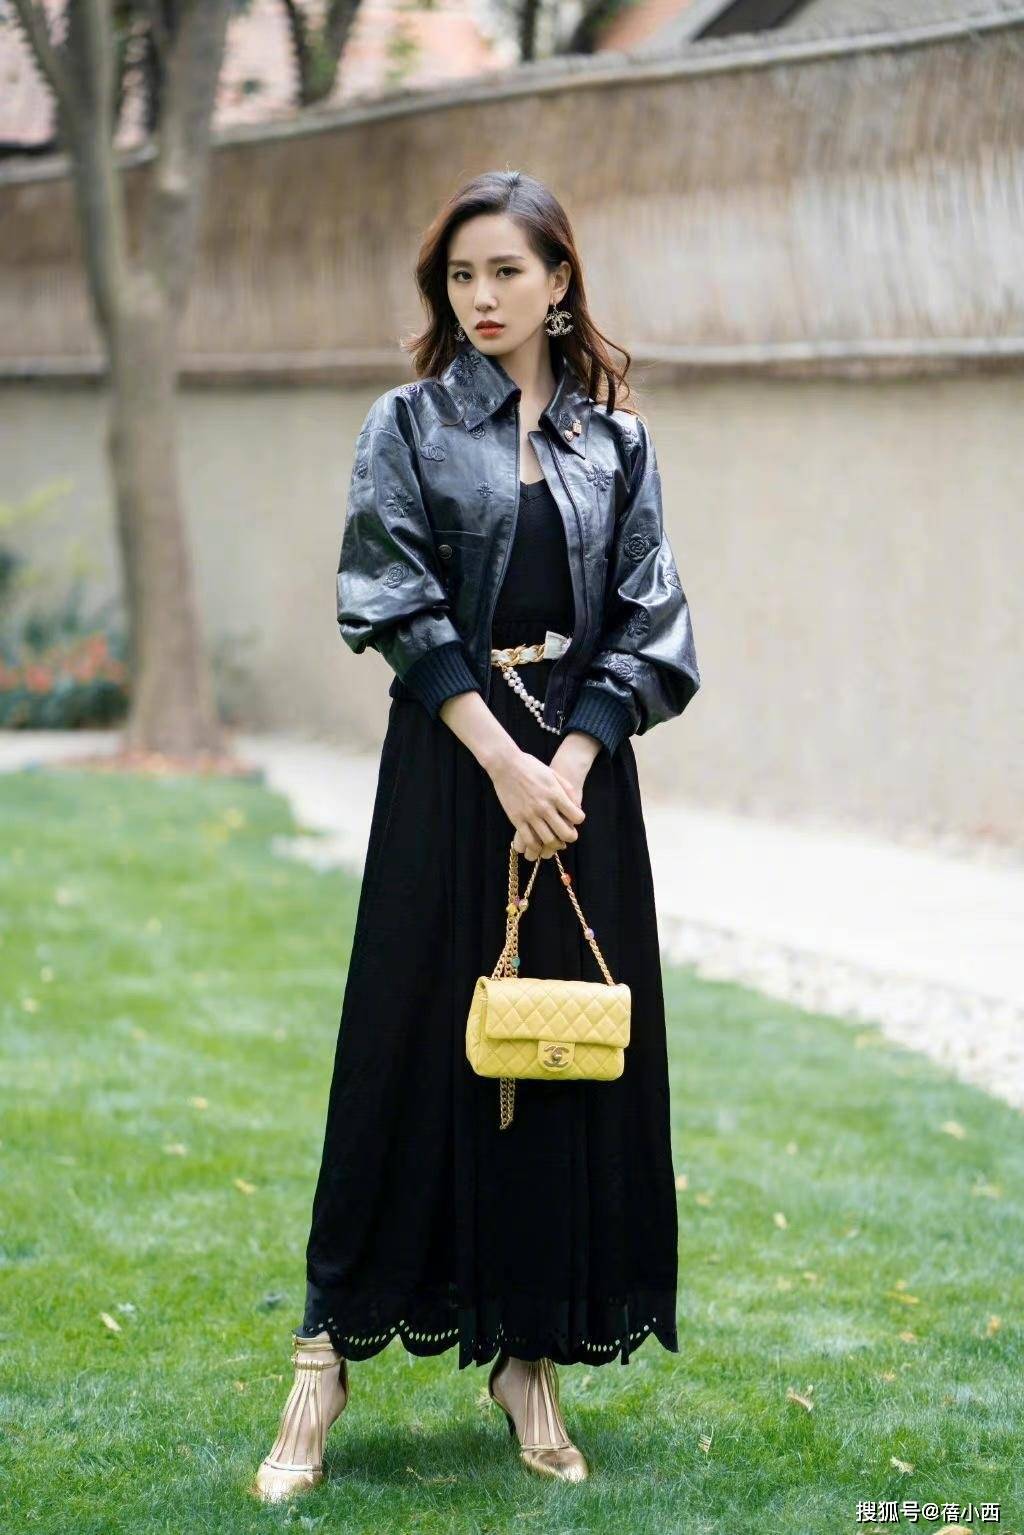 刘诗诗换了一种风格,穿着黑色的皮衣搭配黑色连衣裙